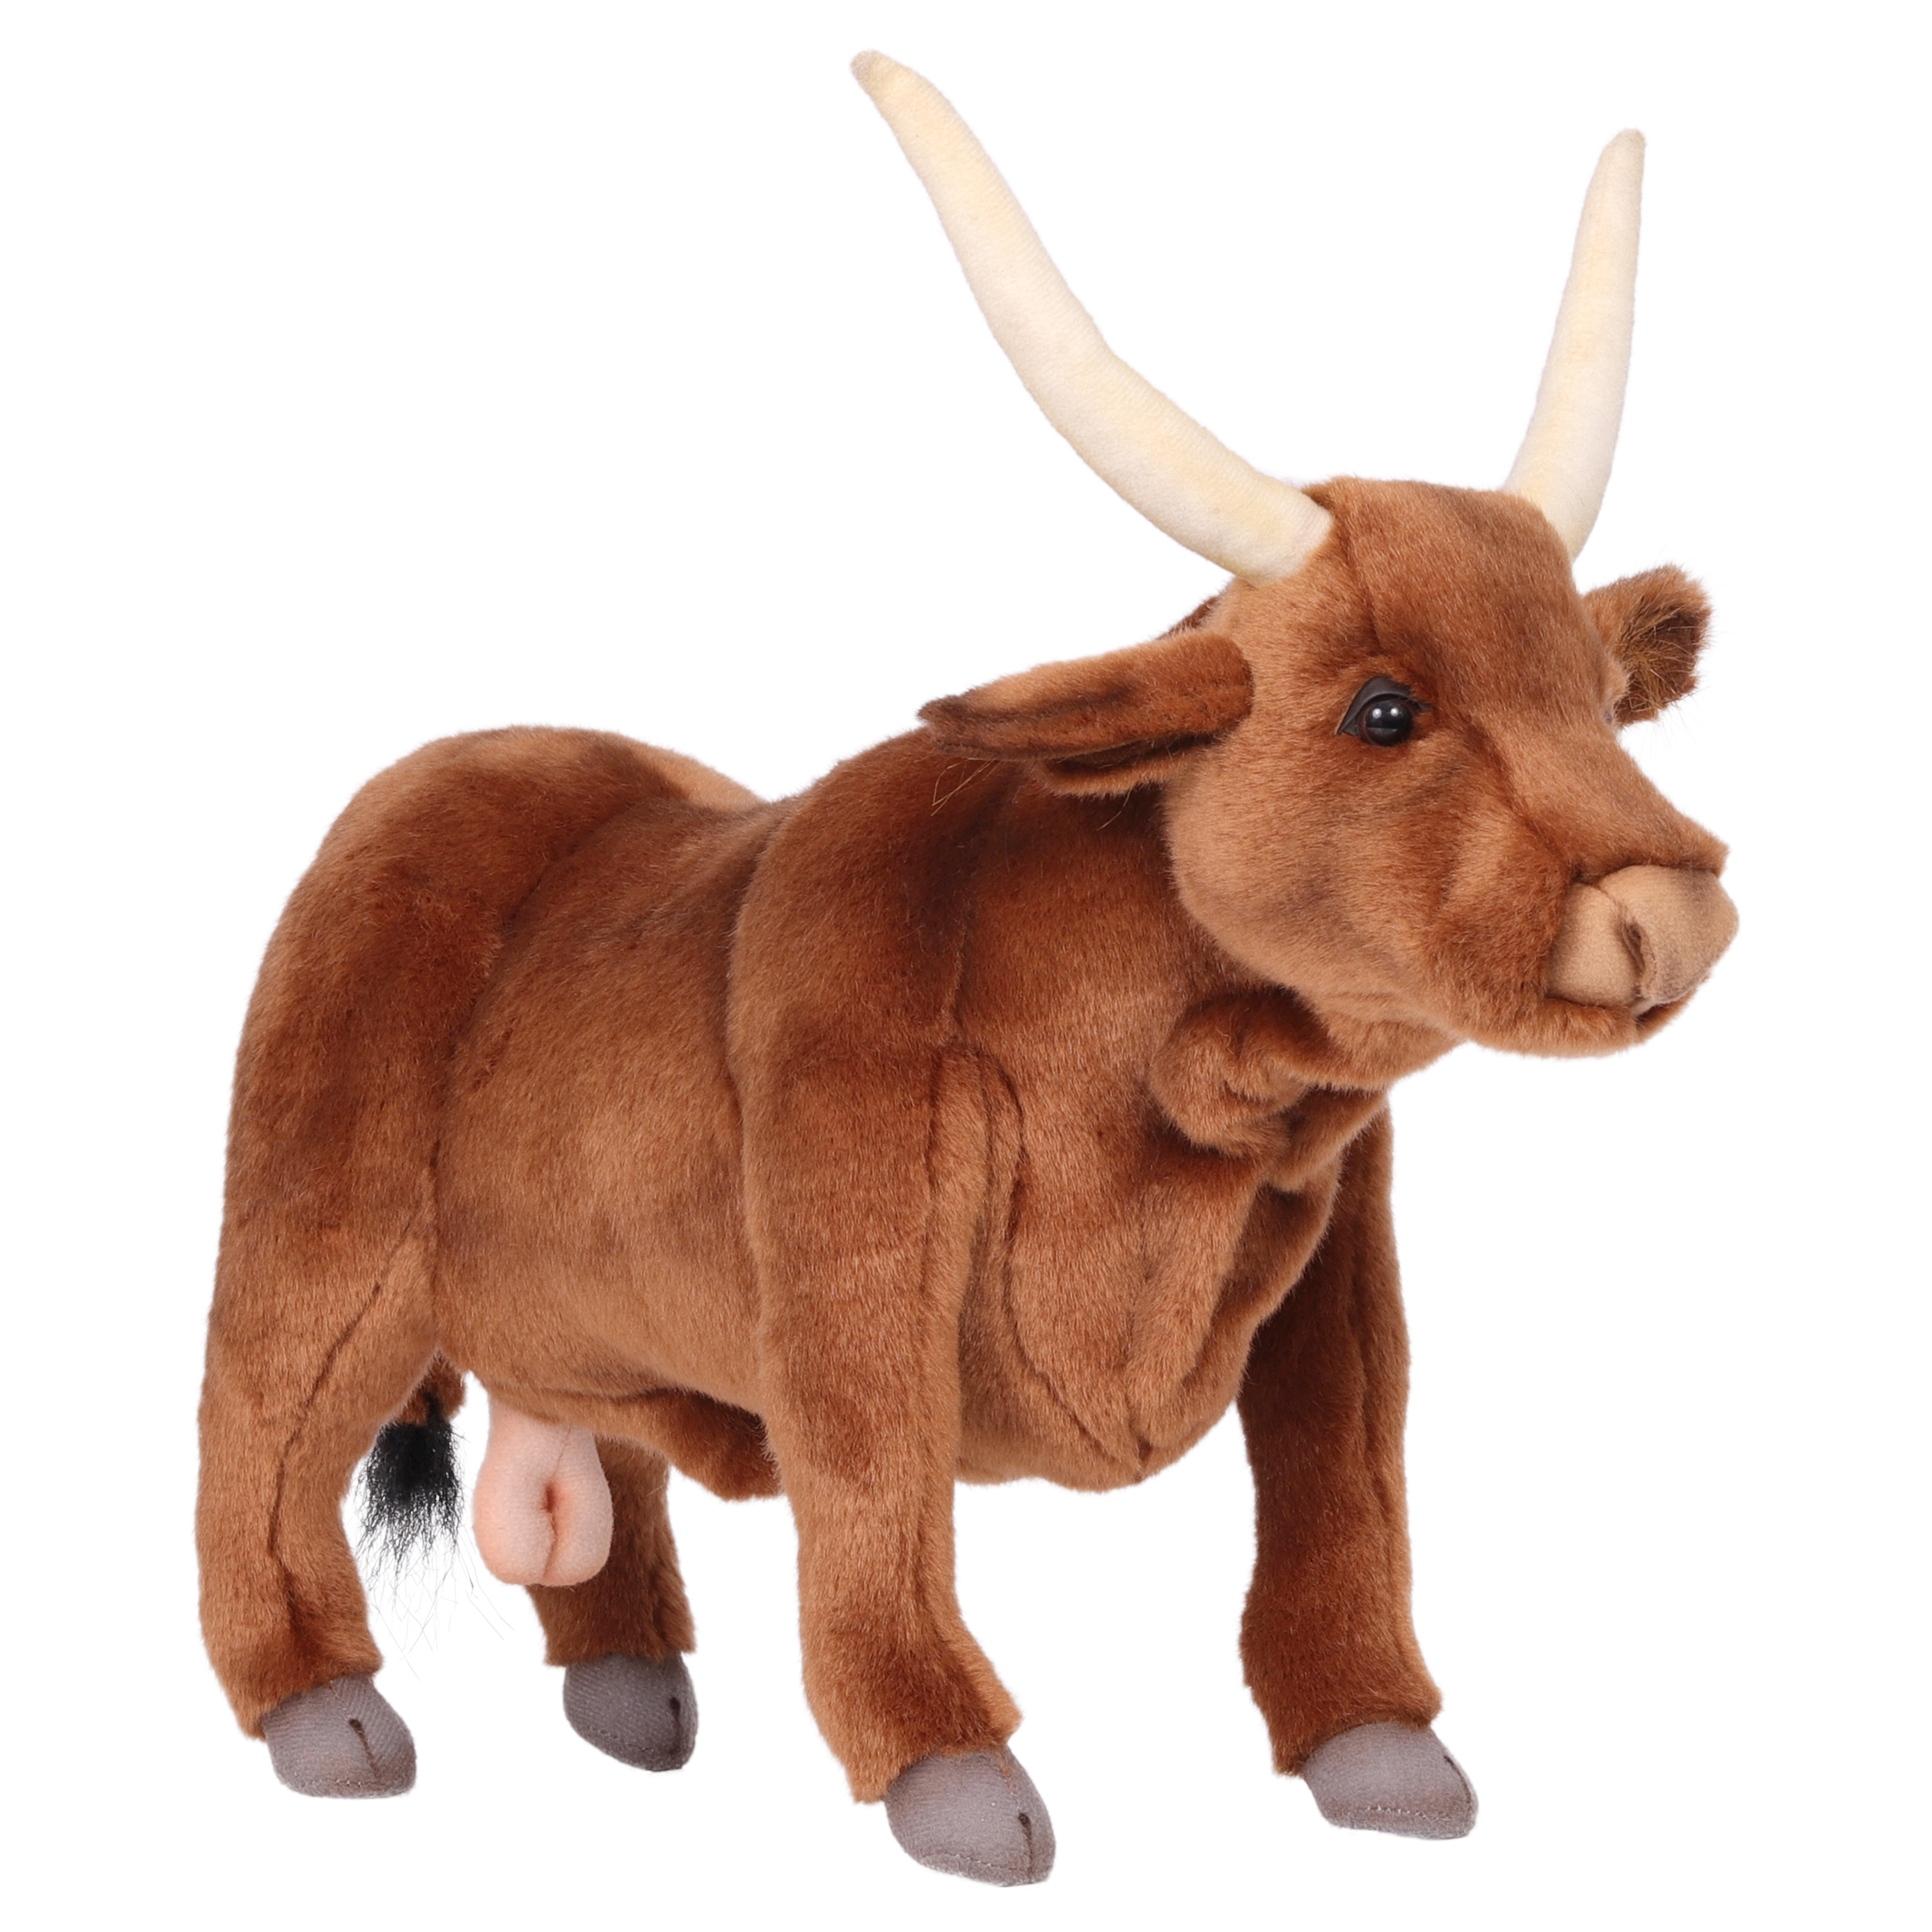 Реалистичная мягкая игрушка Hansa Creation Бык, коричневый, 37 см реалистичная мягкая игрушка hansa creation бык коричневый 22 см